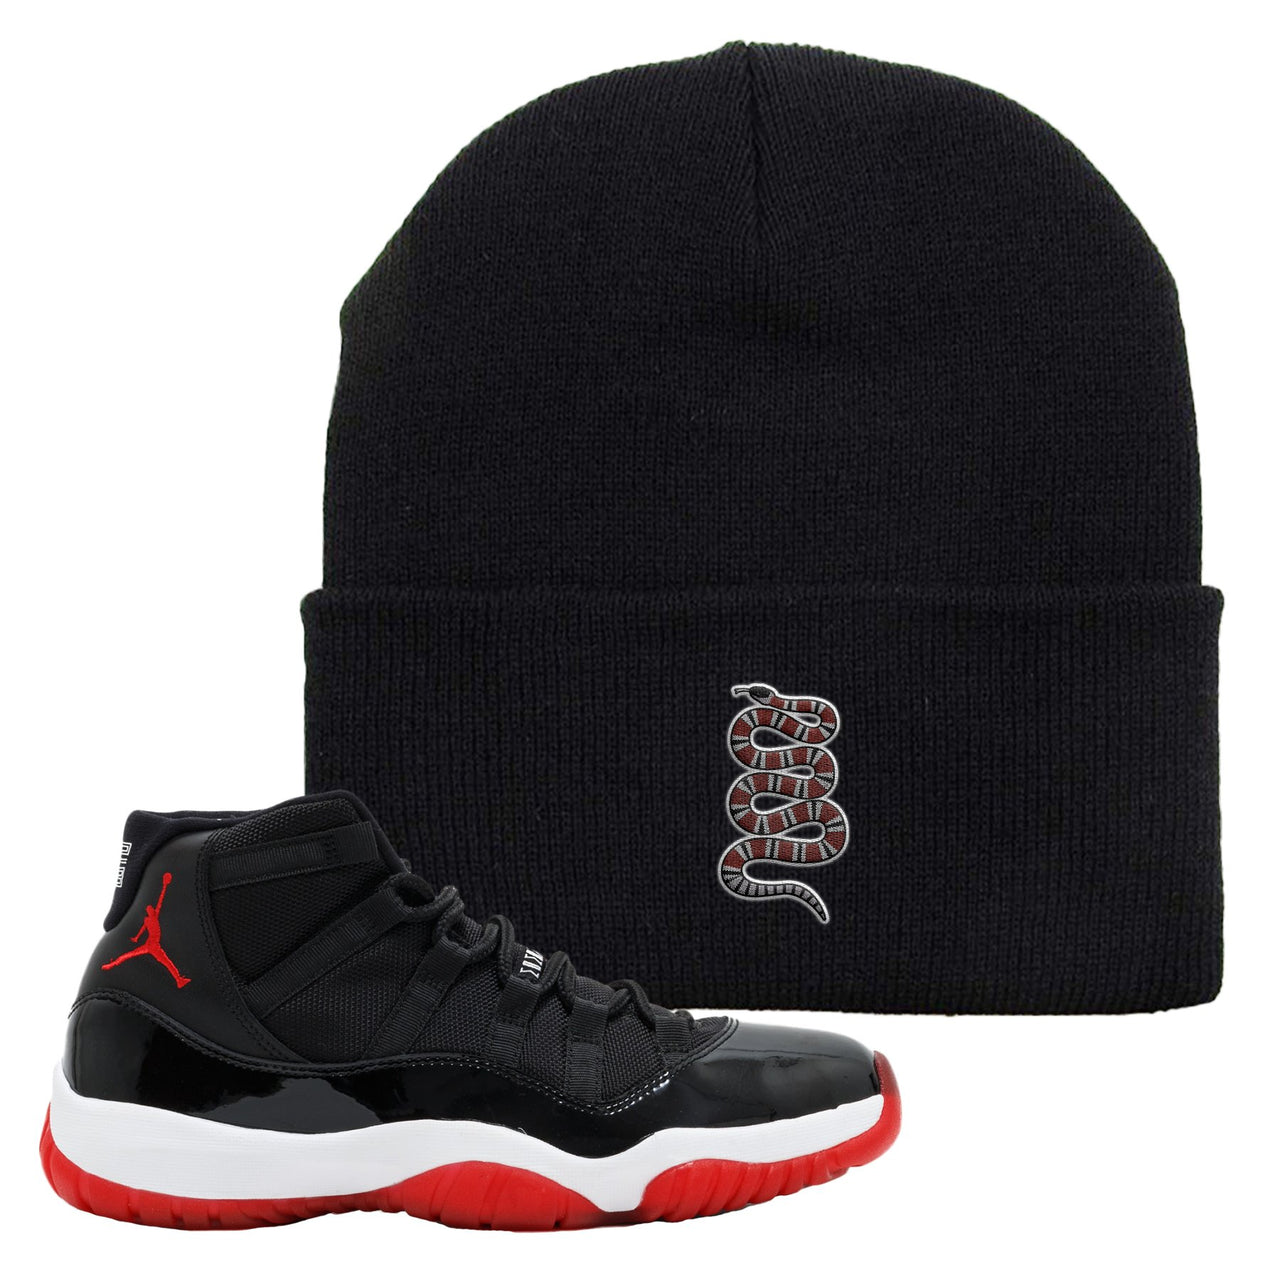 Jordan 11 Bred Coiled Snake Black Sneaker Hook Up Beanie